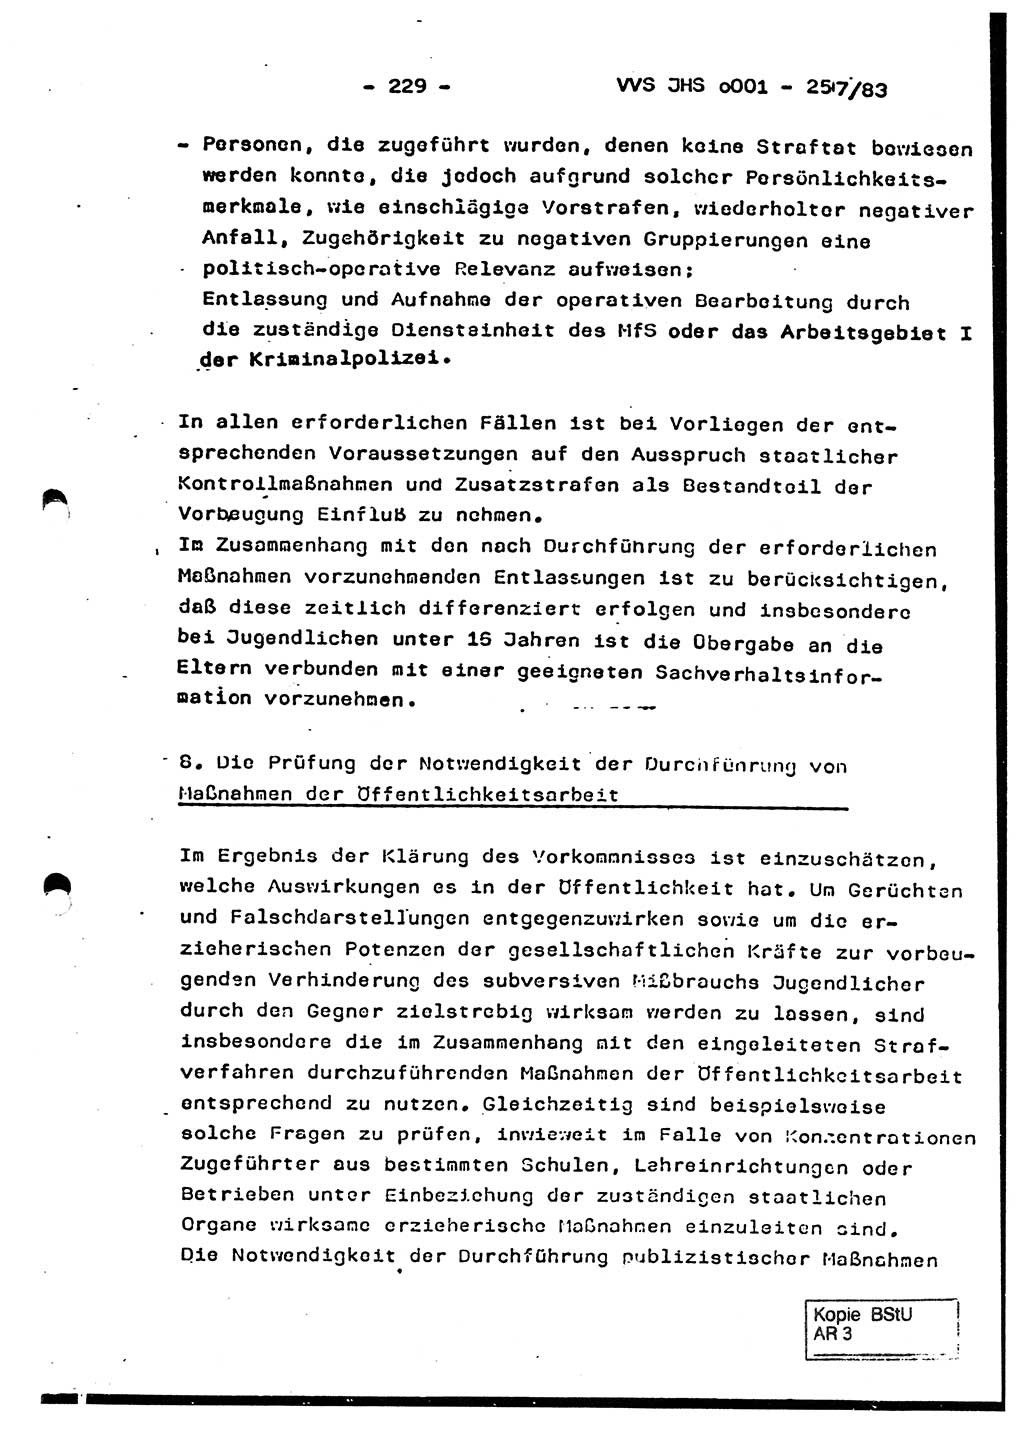 Dissertation, Oberst Helmut Lubas (BV Mdg.), Oberstleutnant Manfred Eschberger (HA IX), Oberleutnant Hans-Jürgen Ludwig (JHS), Ministerium für Staatssicherheit (MfS) [Deutsche Demokratische Republik (DDR)], Juristische Hochschule (JHS), Vertrauliche Verschlußsache (VVS) o001-257/83, Potsdam 1983, Seite 229 (Diss. MfS DDR JHS VVS o001-257/83 1983, S. 229)